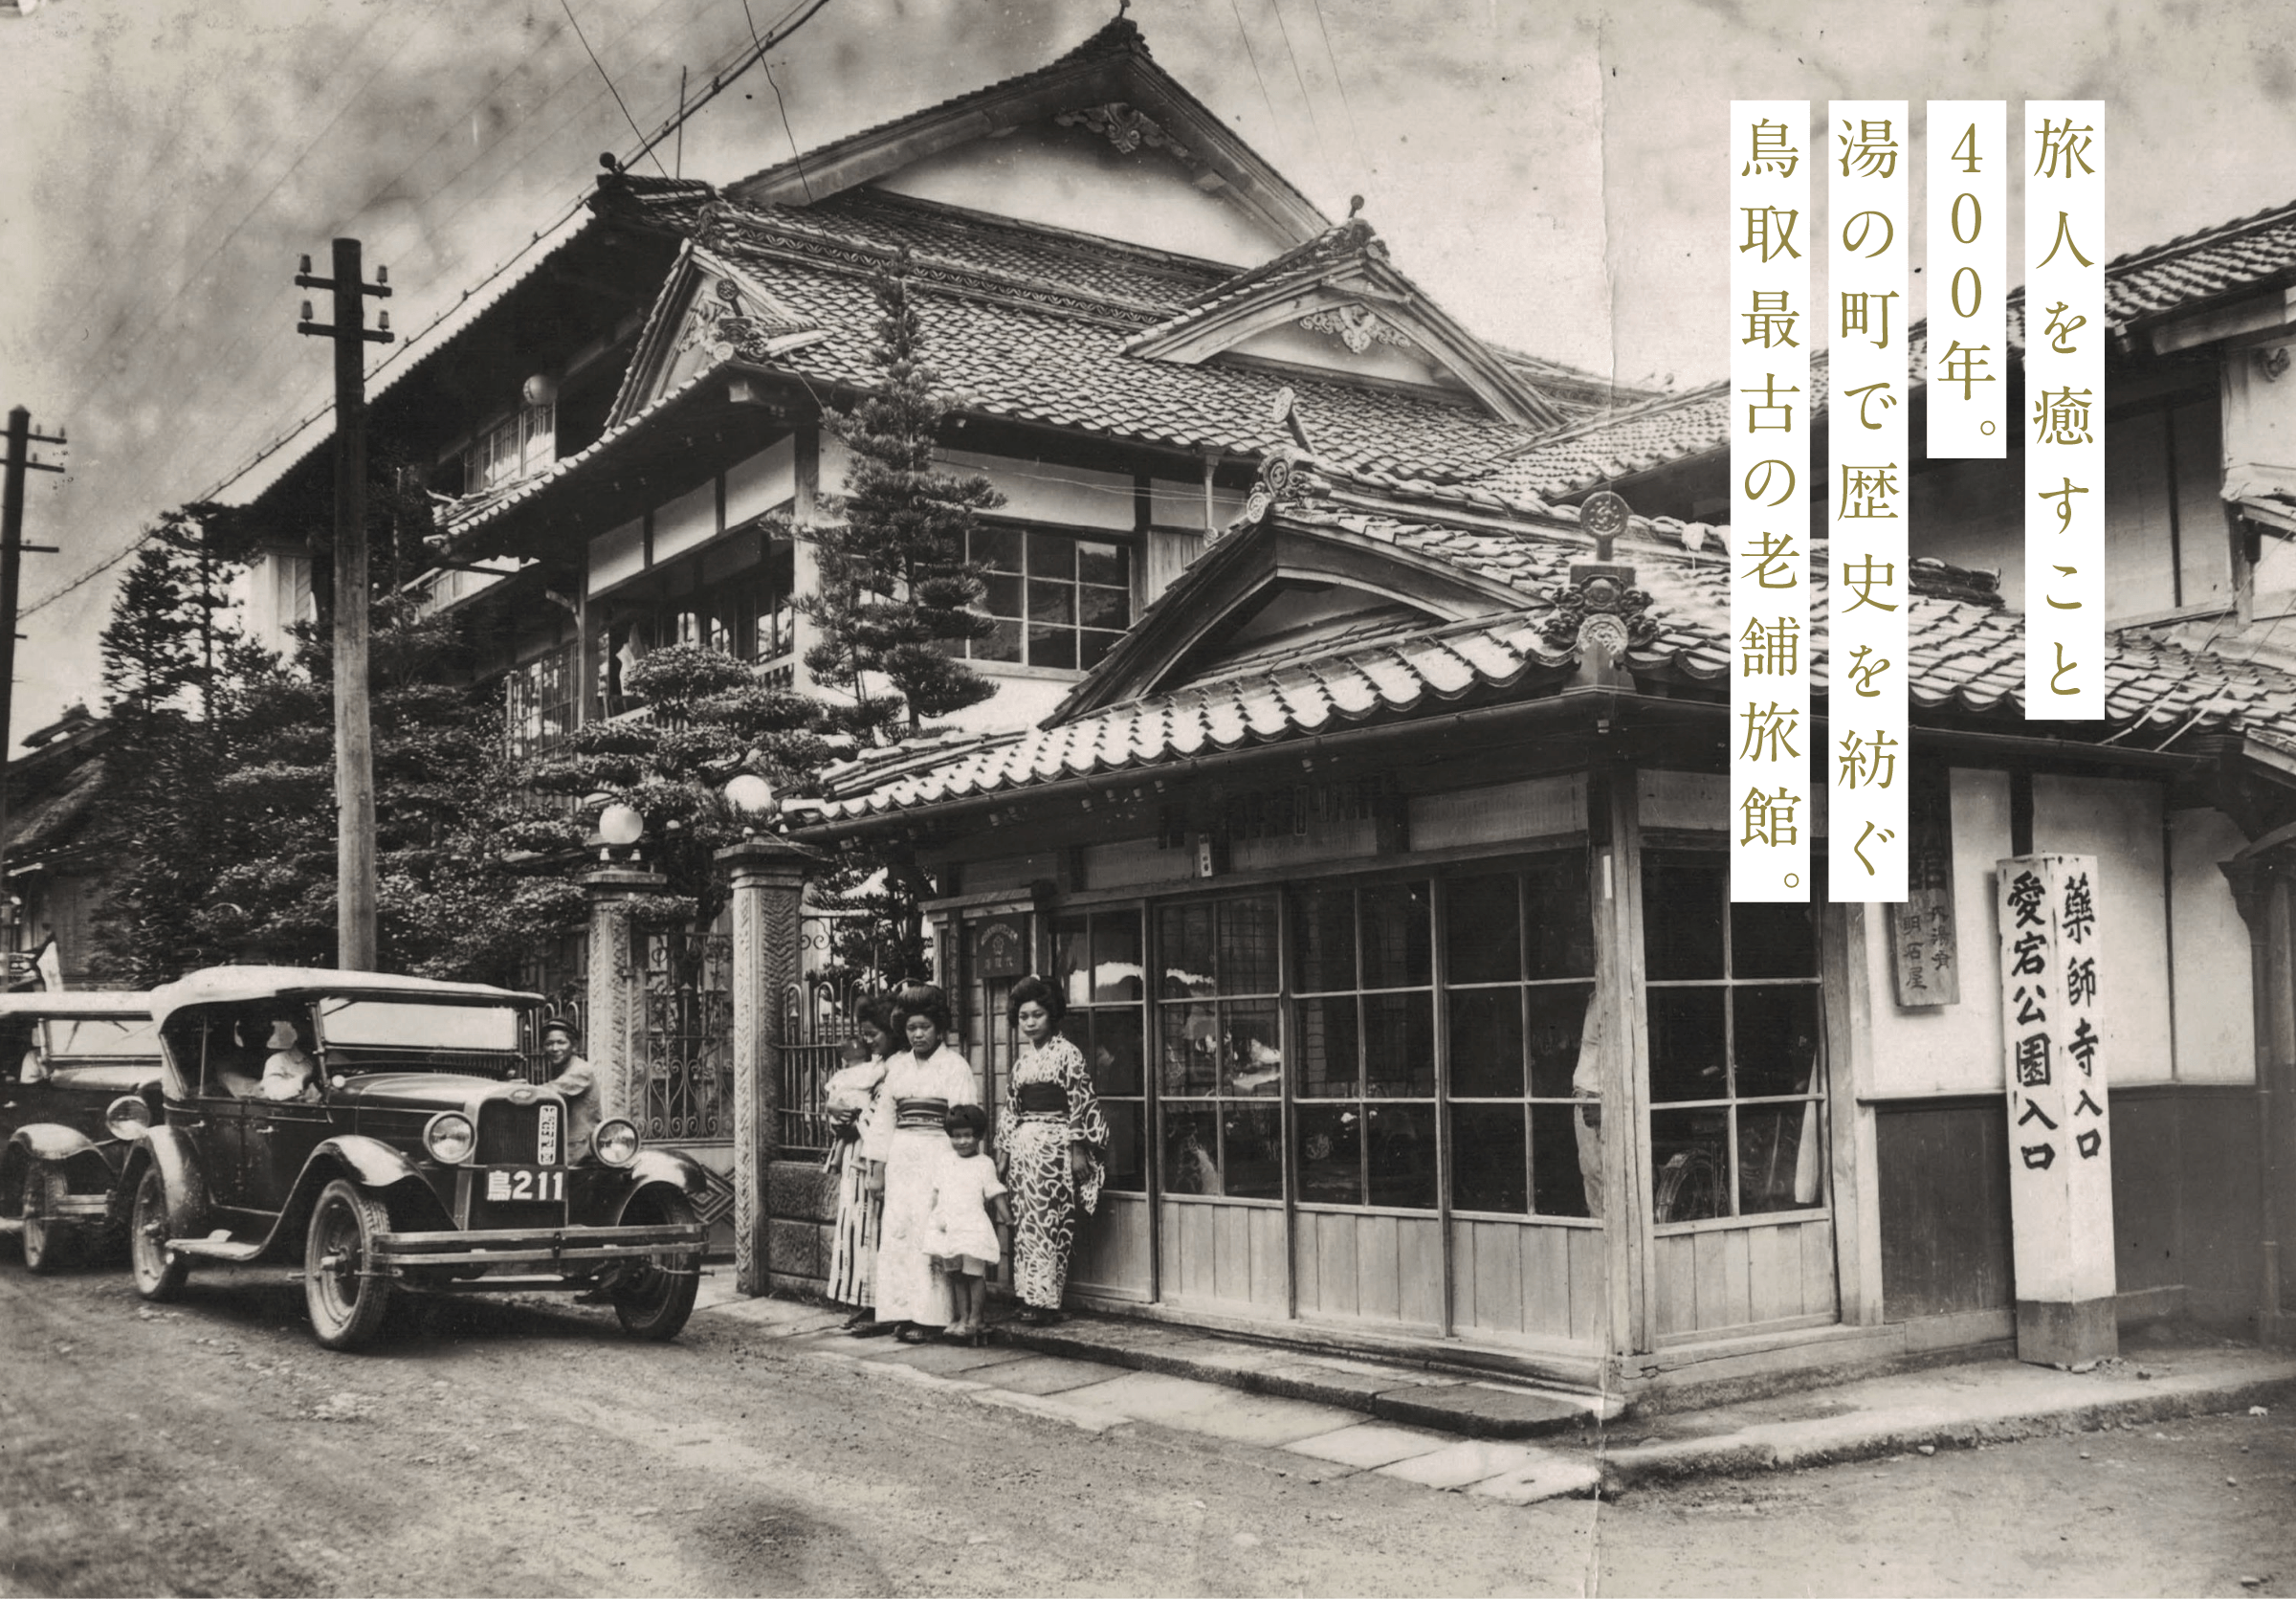 旅人を癒すこと400年。湯の町で歴史を紡ぐ鳥取最古の老舗旅館。